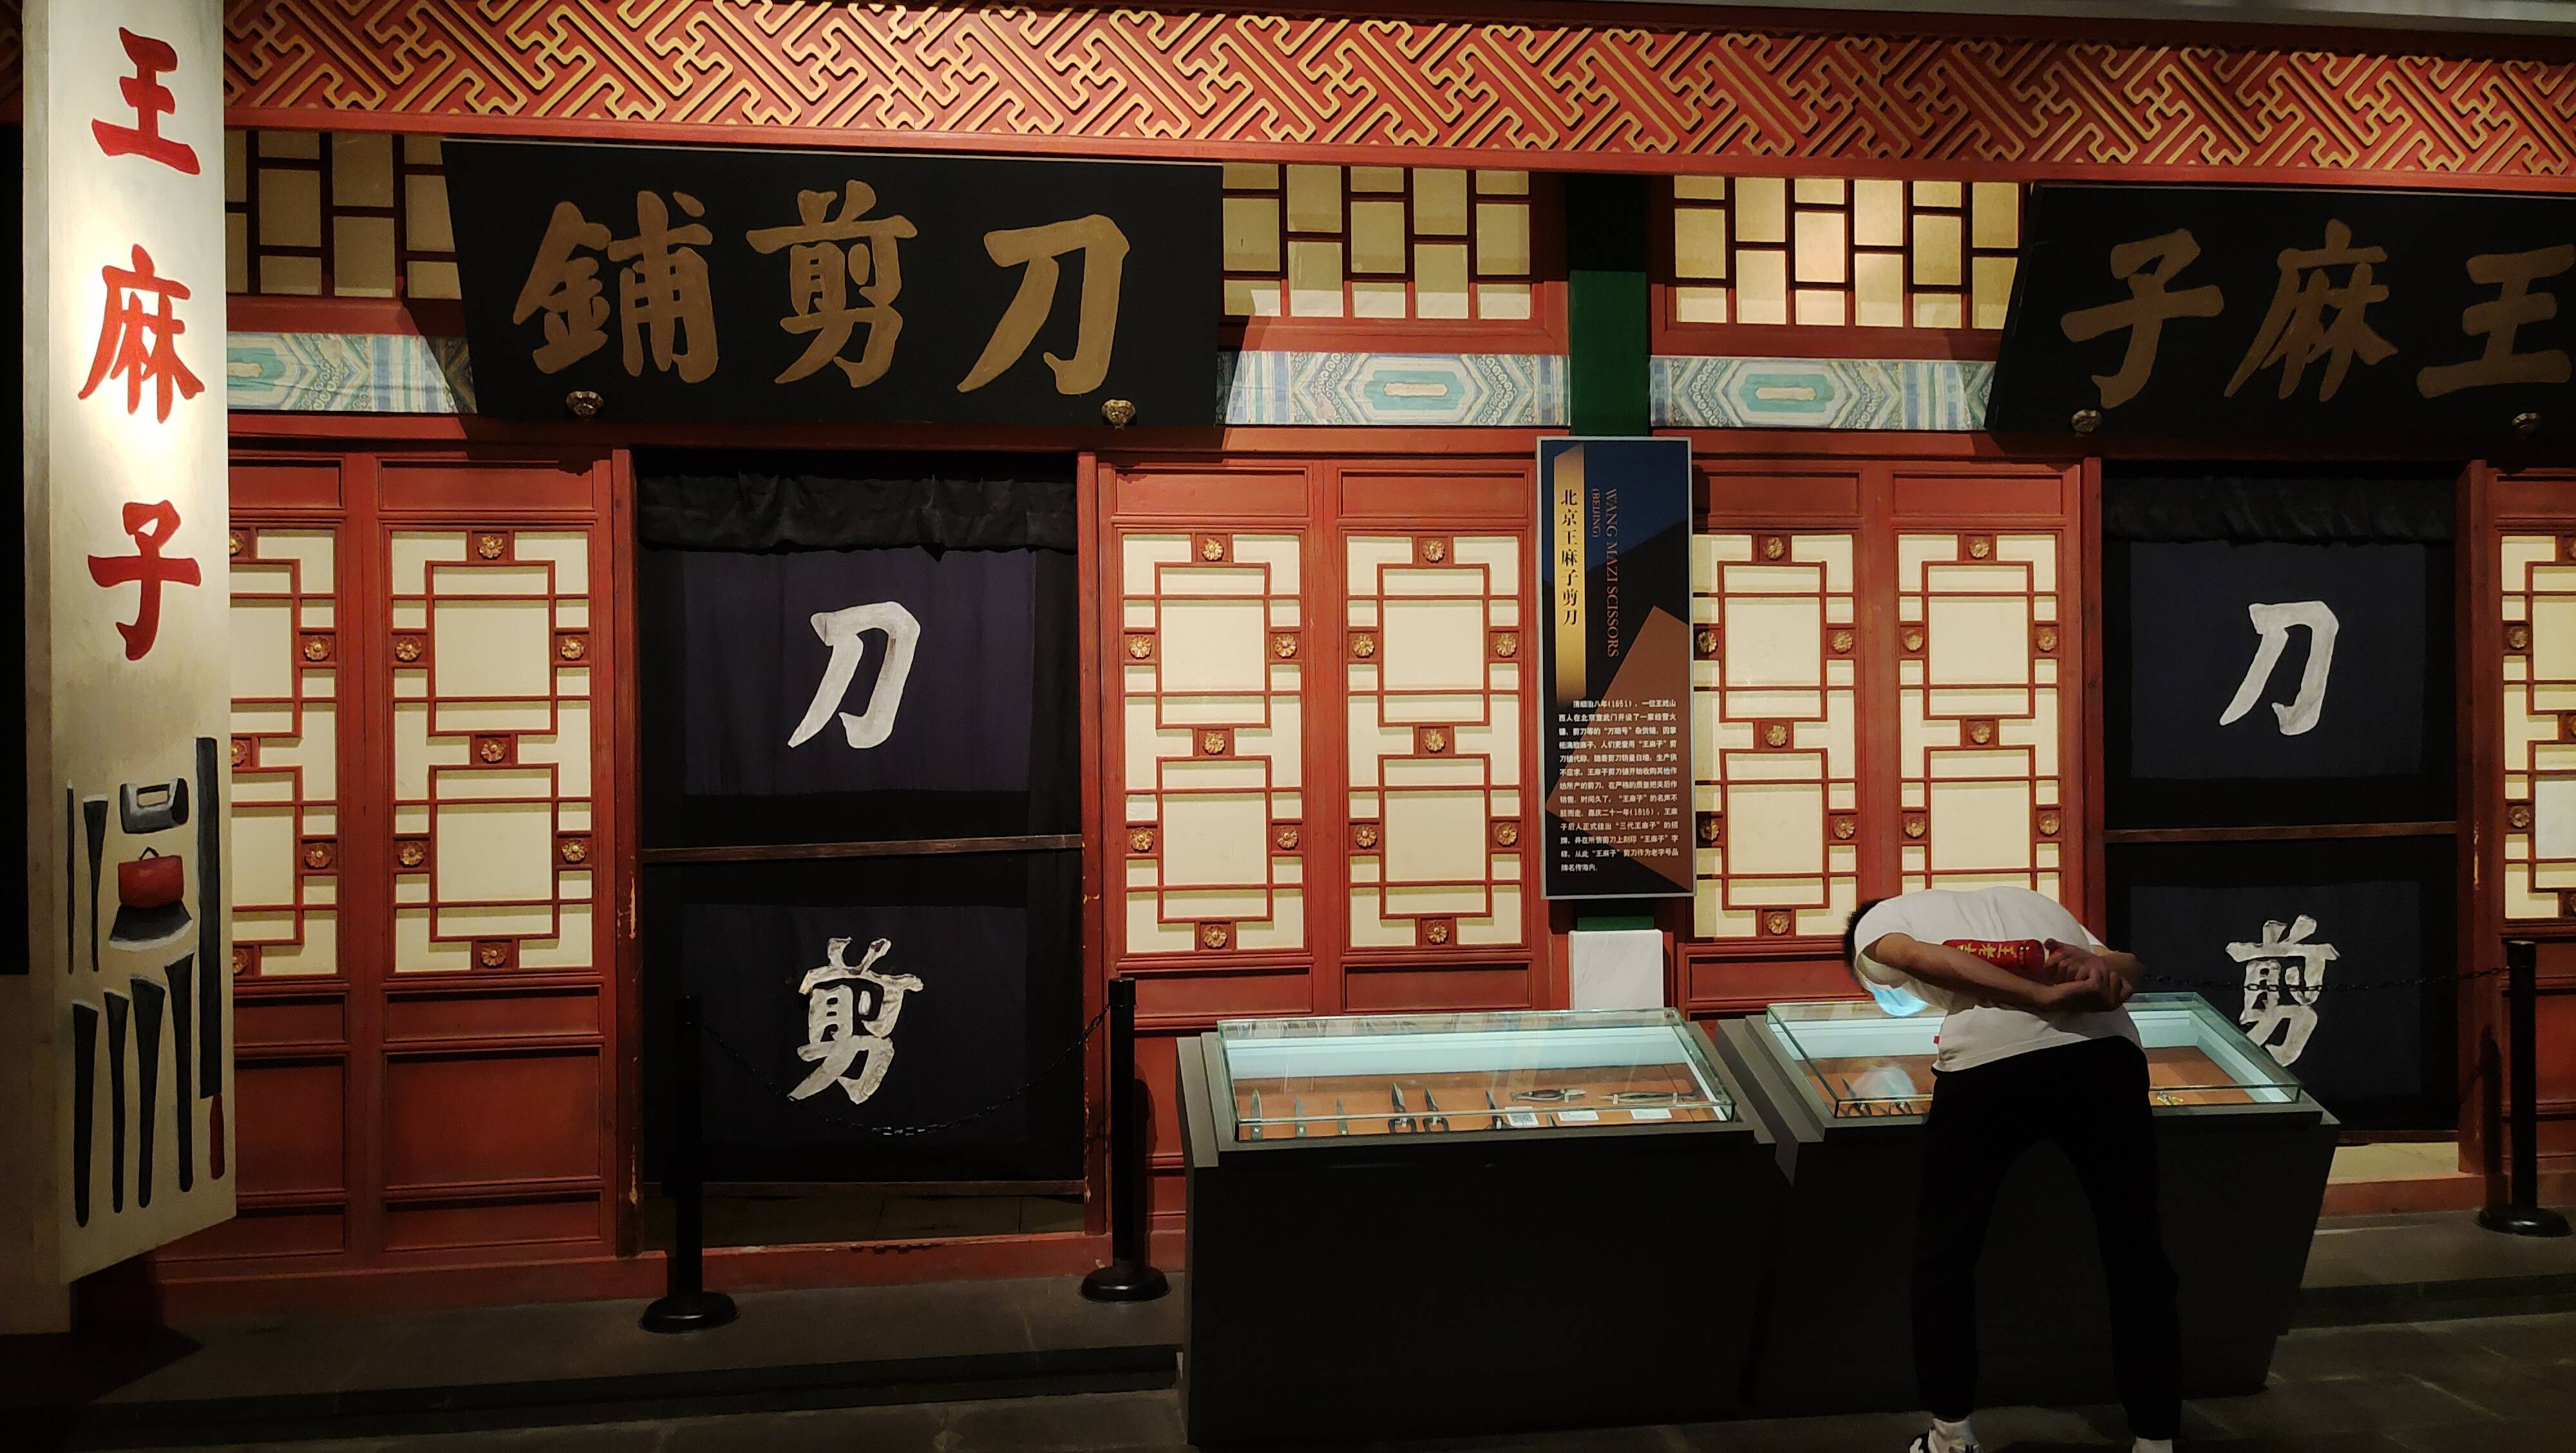 杭州桥西中国刀剪剑博物馆,展现刀剪剑的独特历史和文化